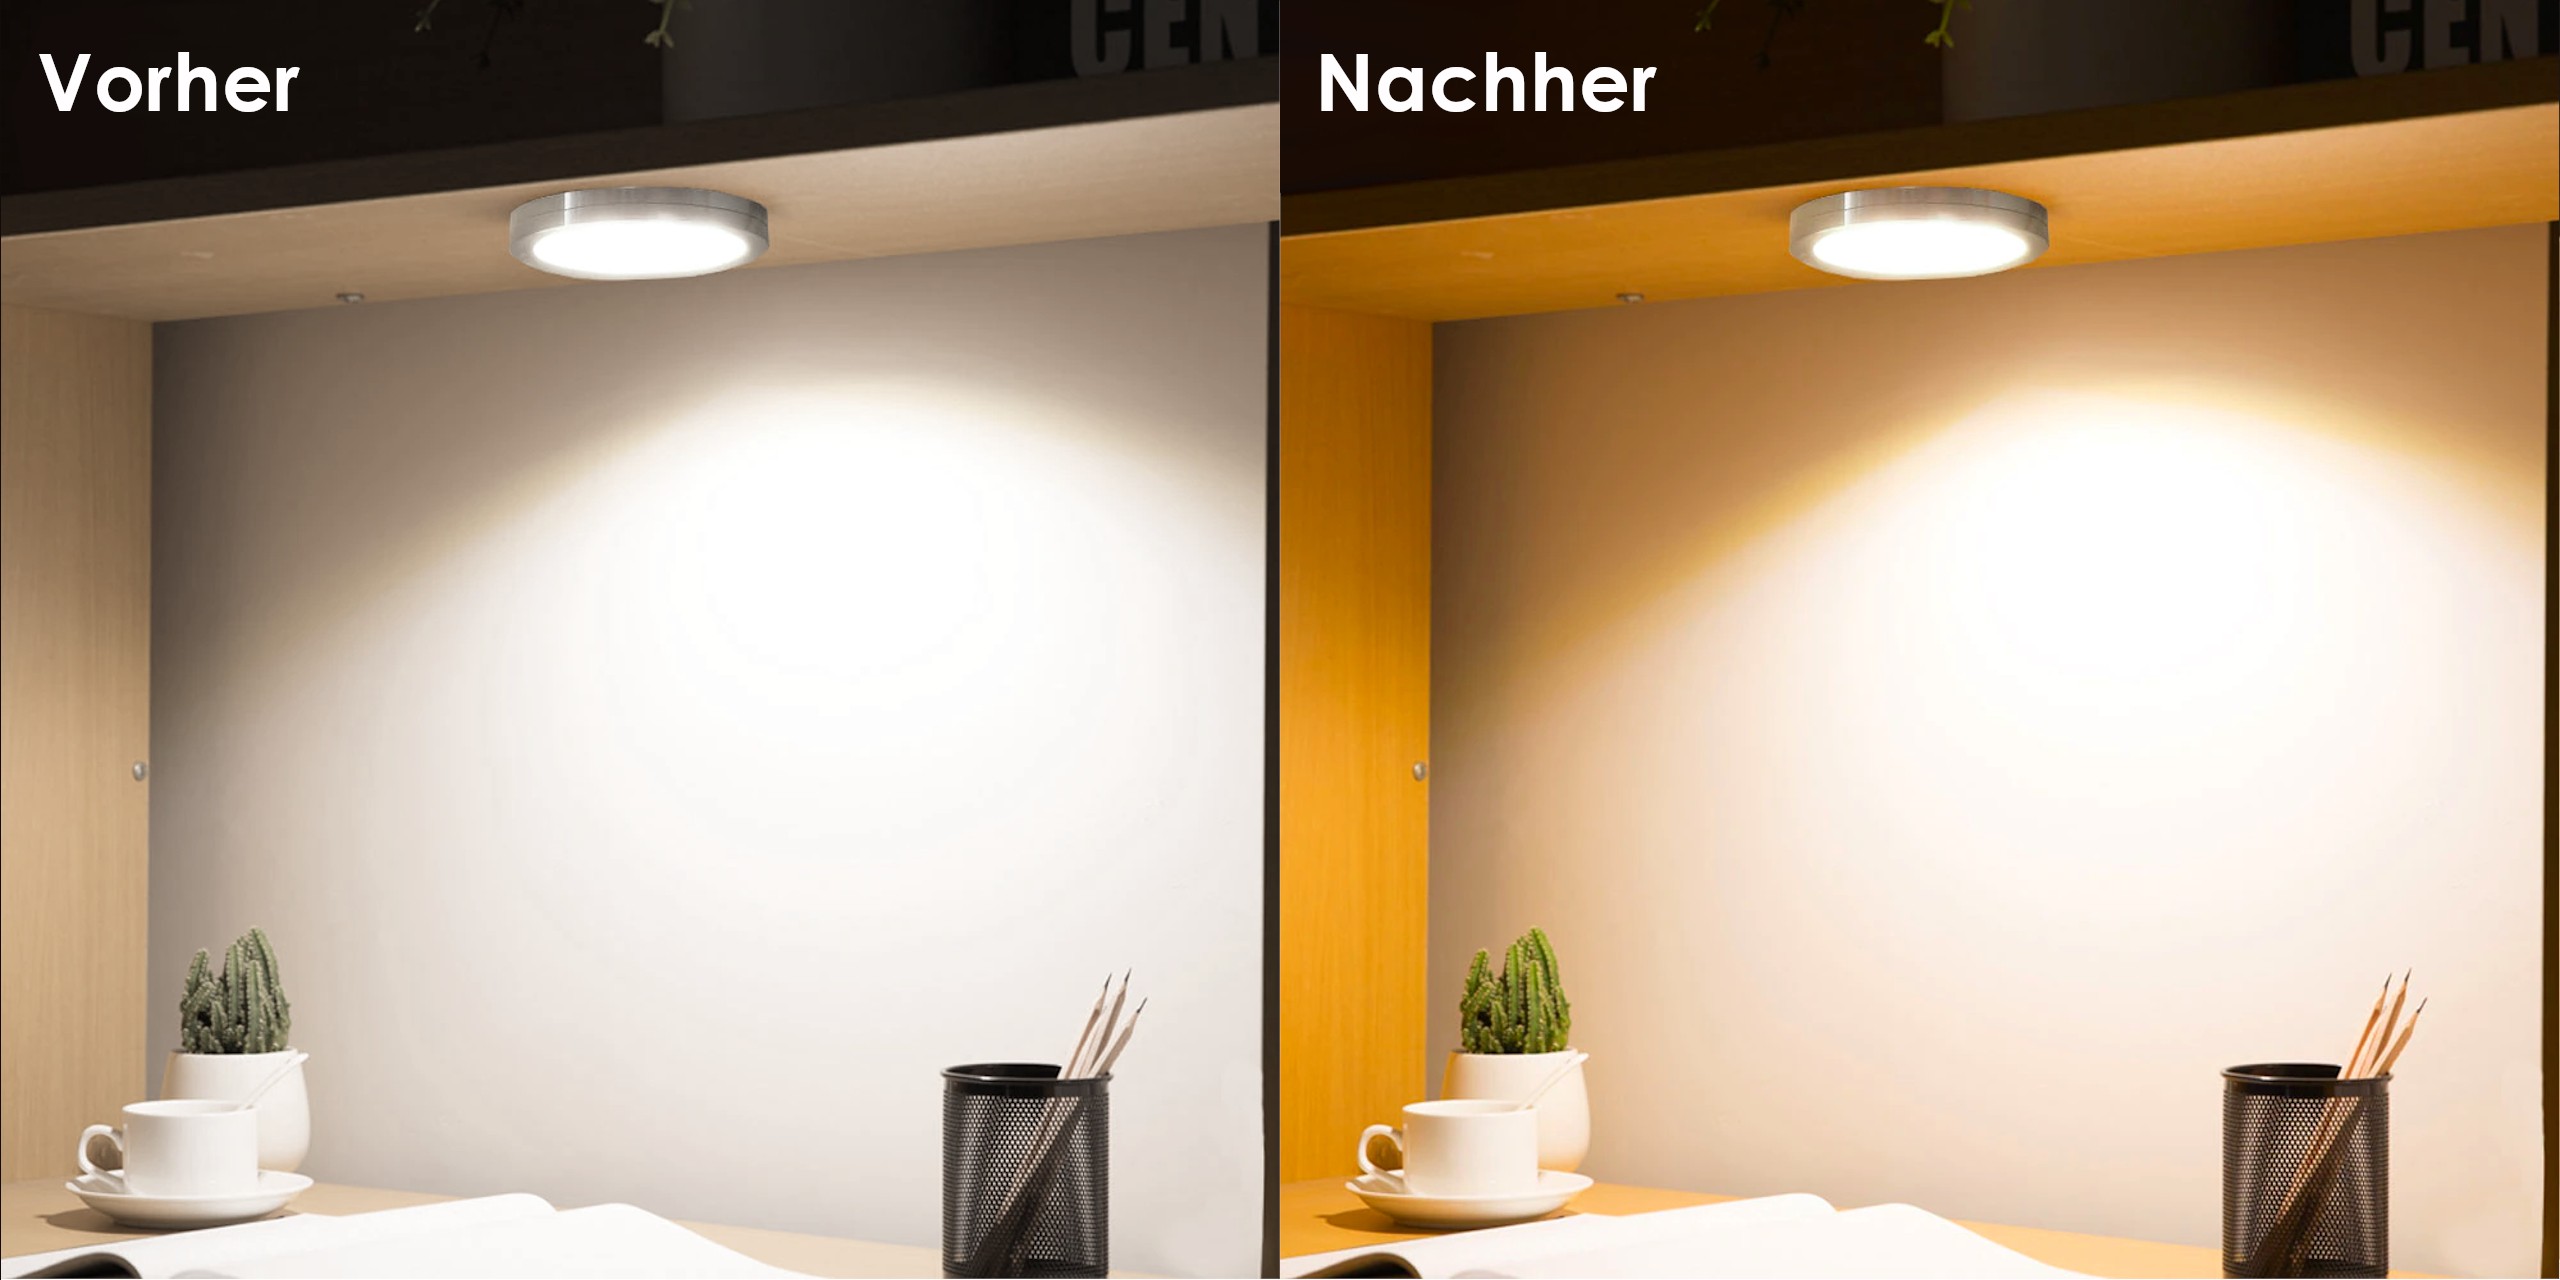 Selbstklebende Farbfolien für LED Lampen, ⌀6 CM Kreiszuschnitt, Warmweiß Farbfilter zur Farbkorrektur, Tageslicht zu Glühlicht, Filterset mit 9 Stück